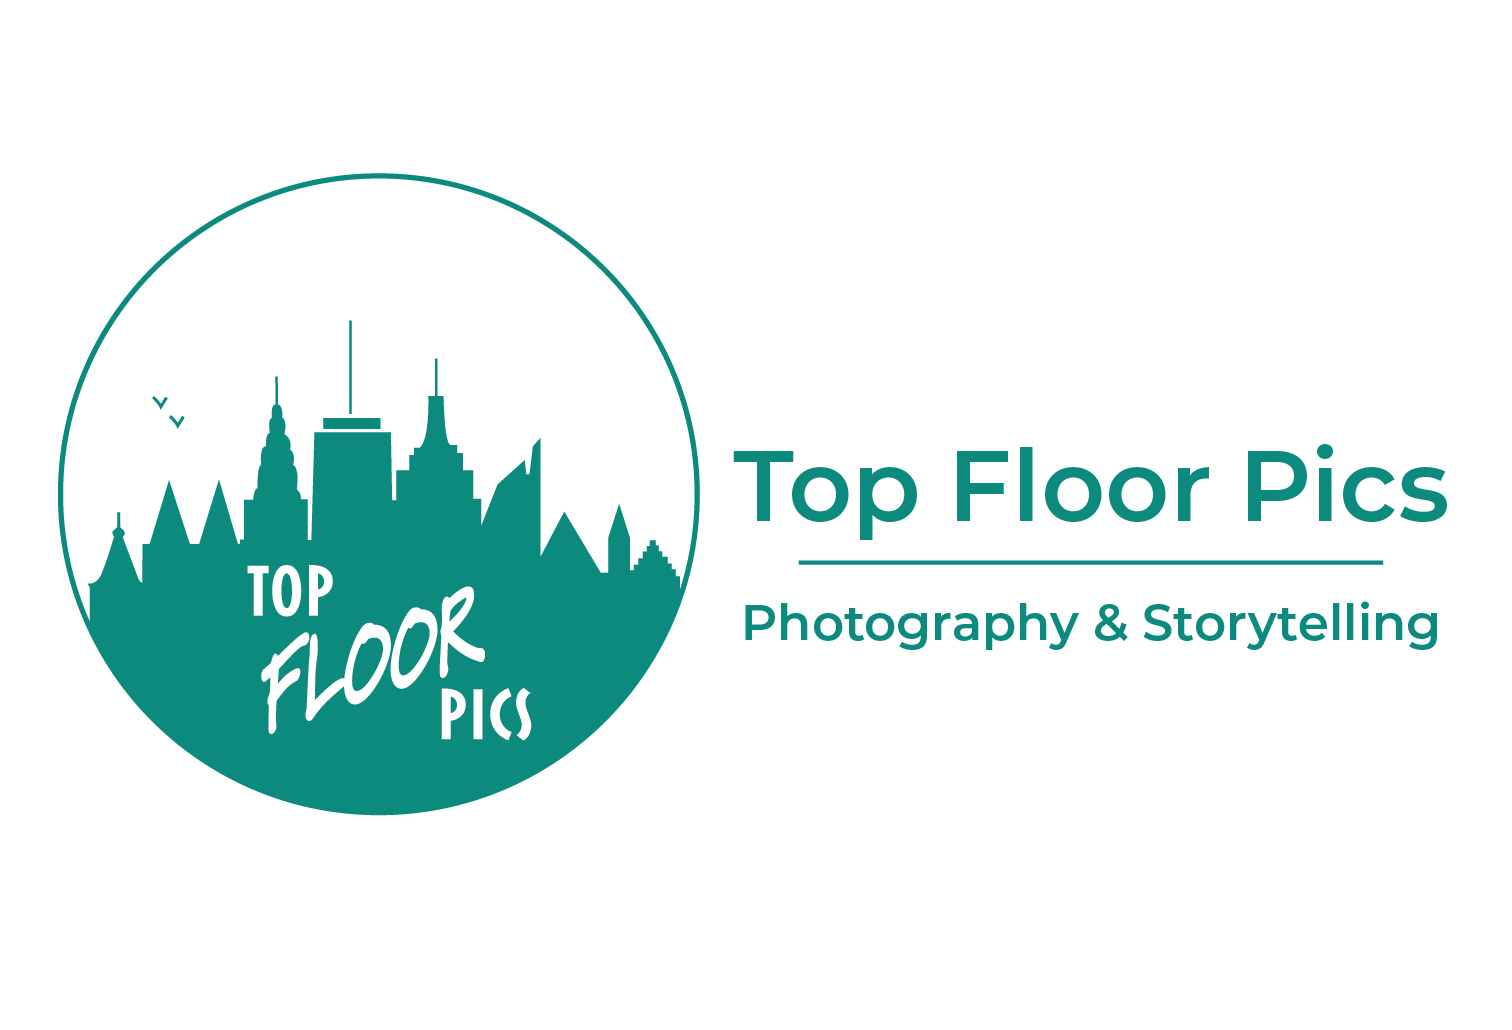 Top Floor Pics